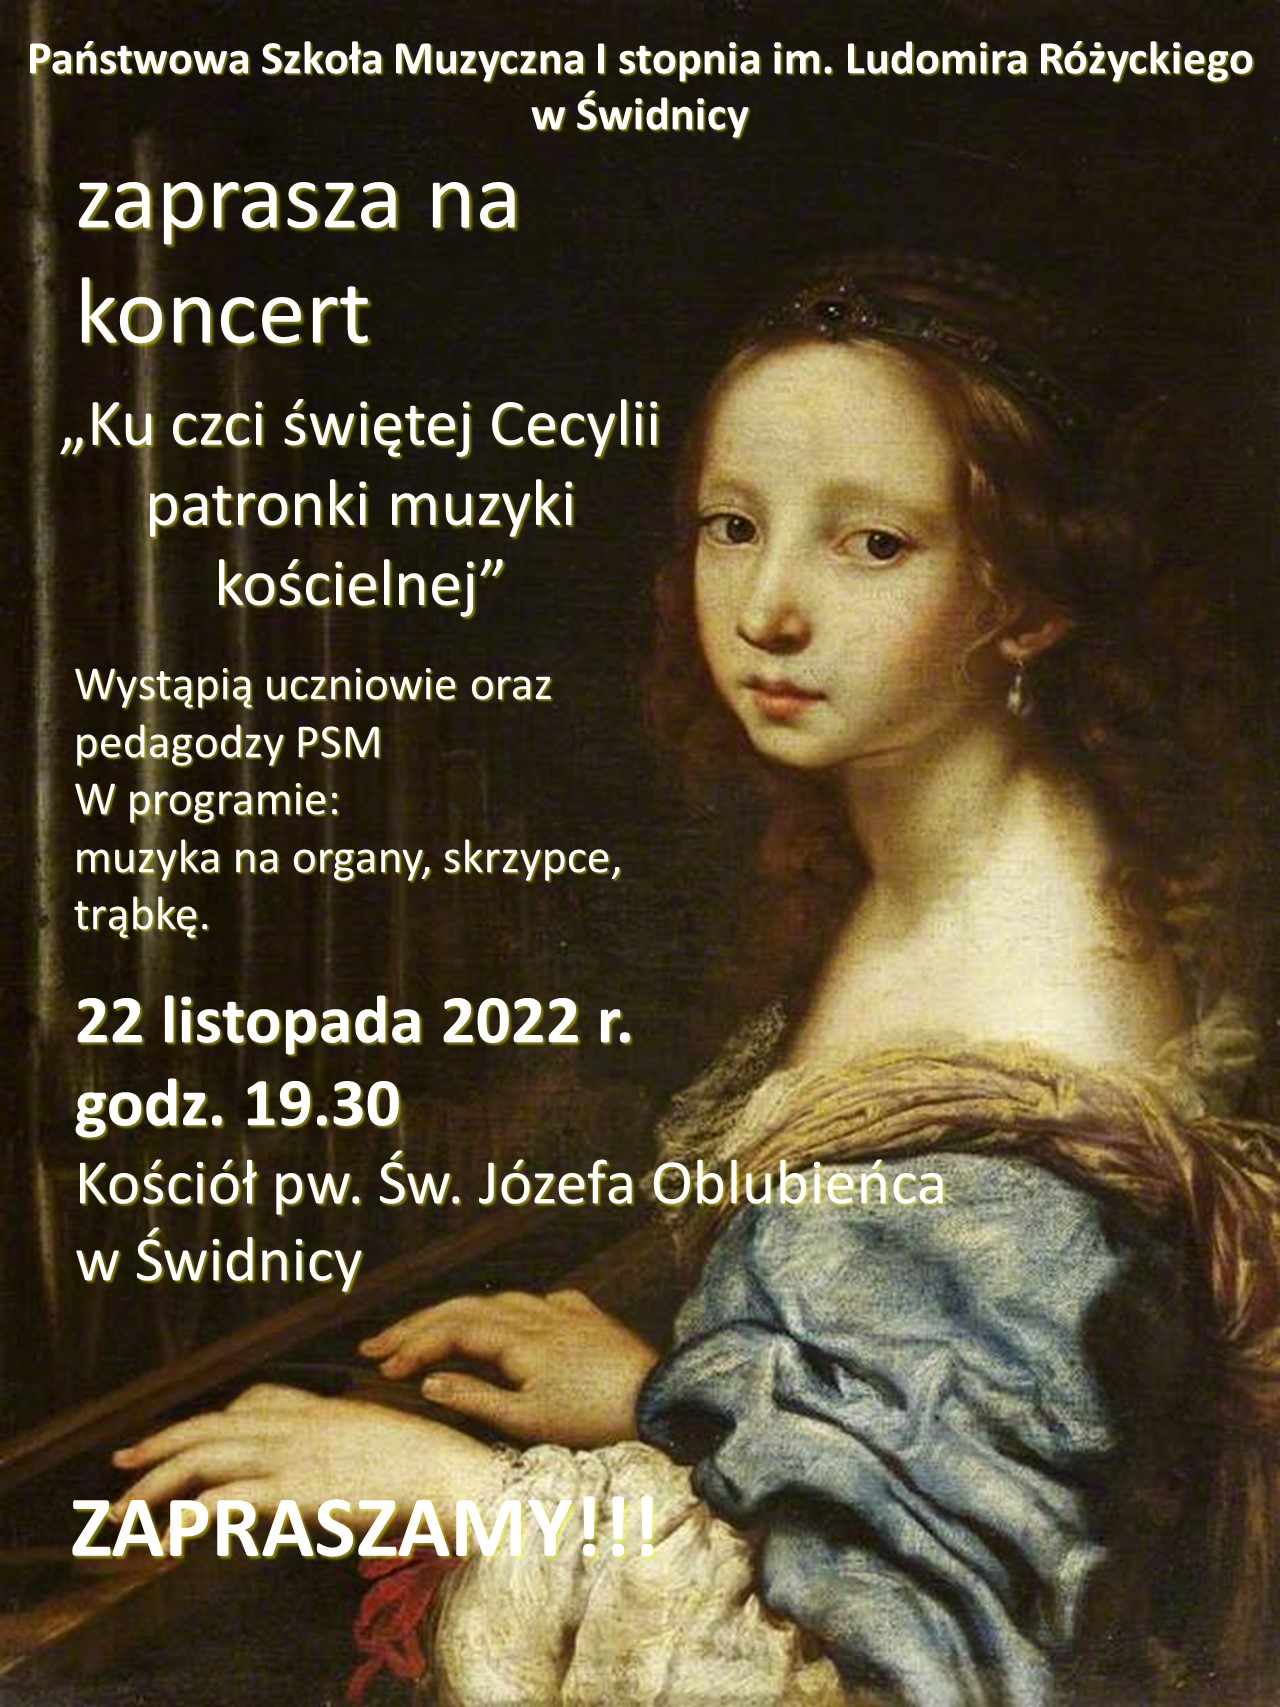 Plakat przedstawia zdjęcie św. Cecylii po prawej stronie. Po lewej stronie napisy w kolorze białym z informacją na temat koncertu : wykonawca, miejsce , data i godzina koncertu.